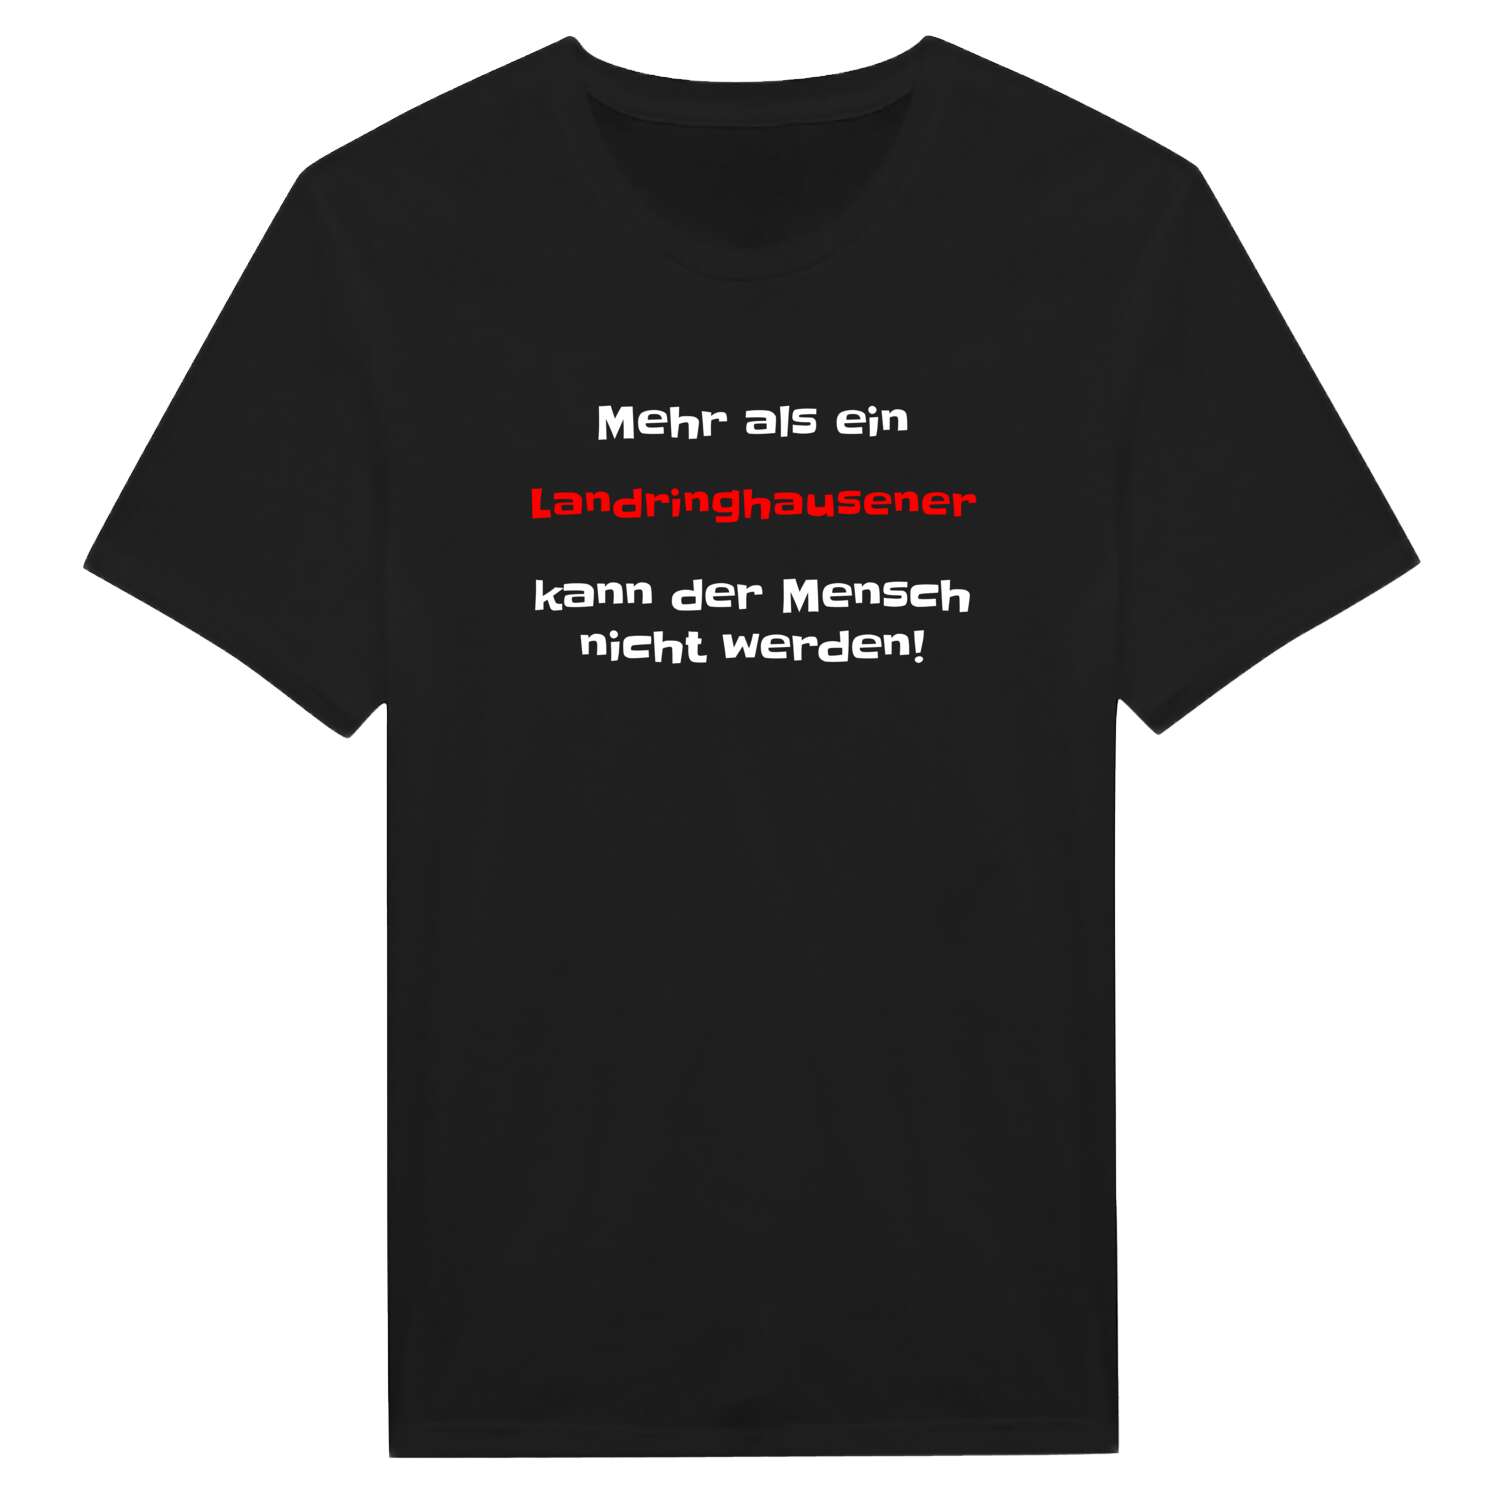 Landringhausen T-Shirt »Mehr als ein«